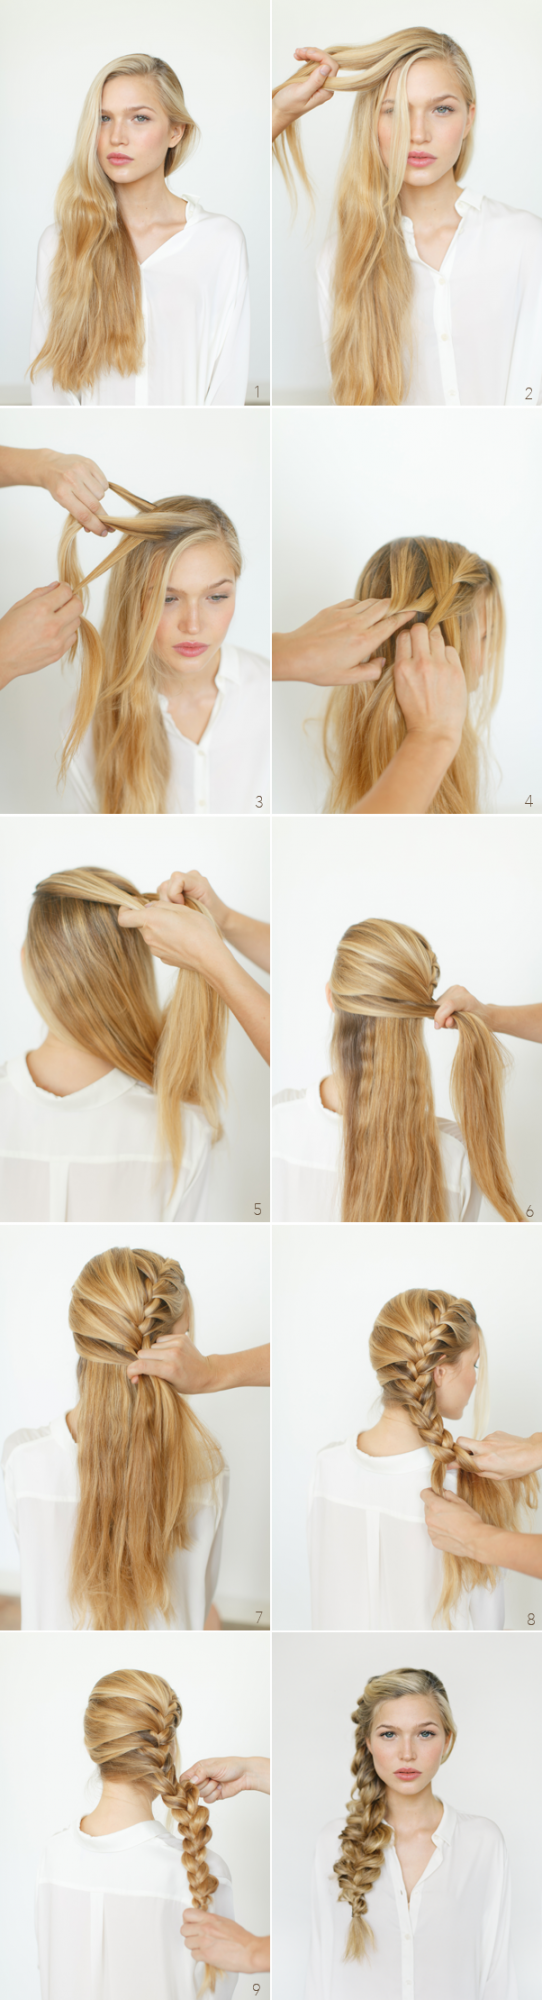 hairstyle tutorials (2)